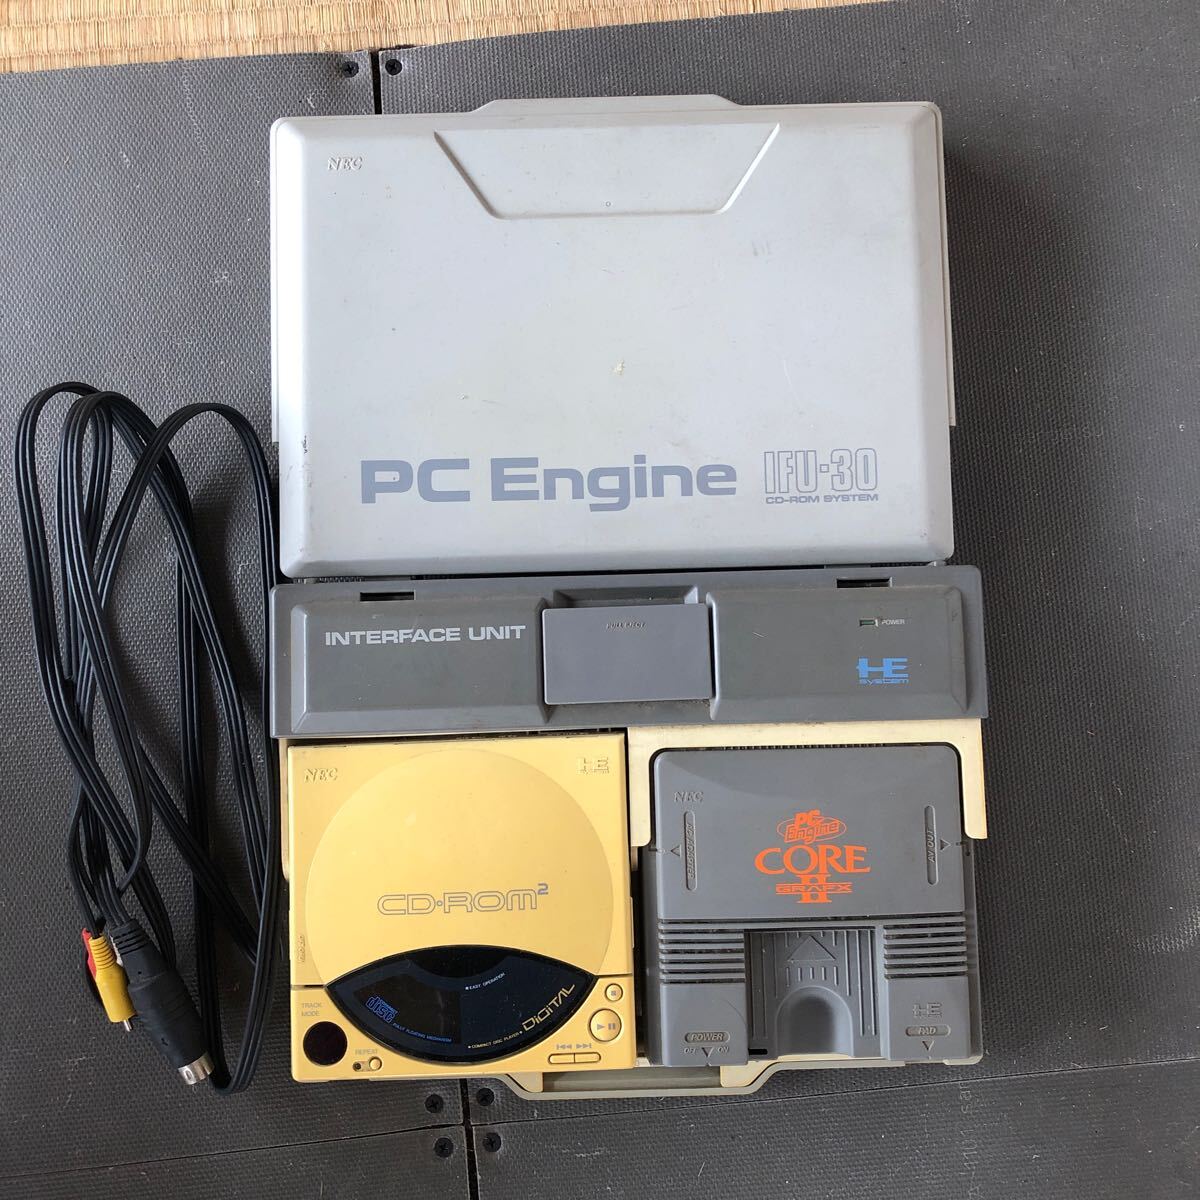 【ジャンク】NEC PCエンジン PC Engine IFU-30 CD-ROM SYSTEM 動作未確認 本体、ケーブル各1ケの画像1